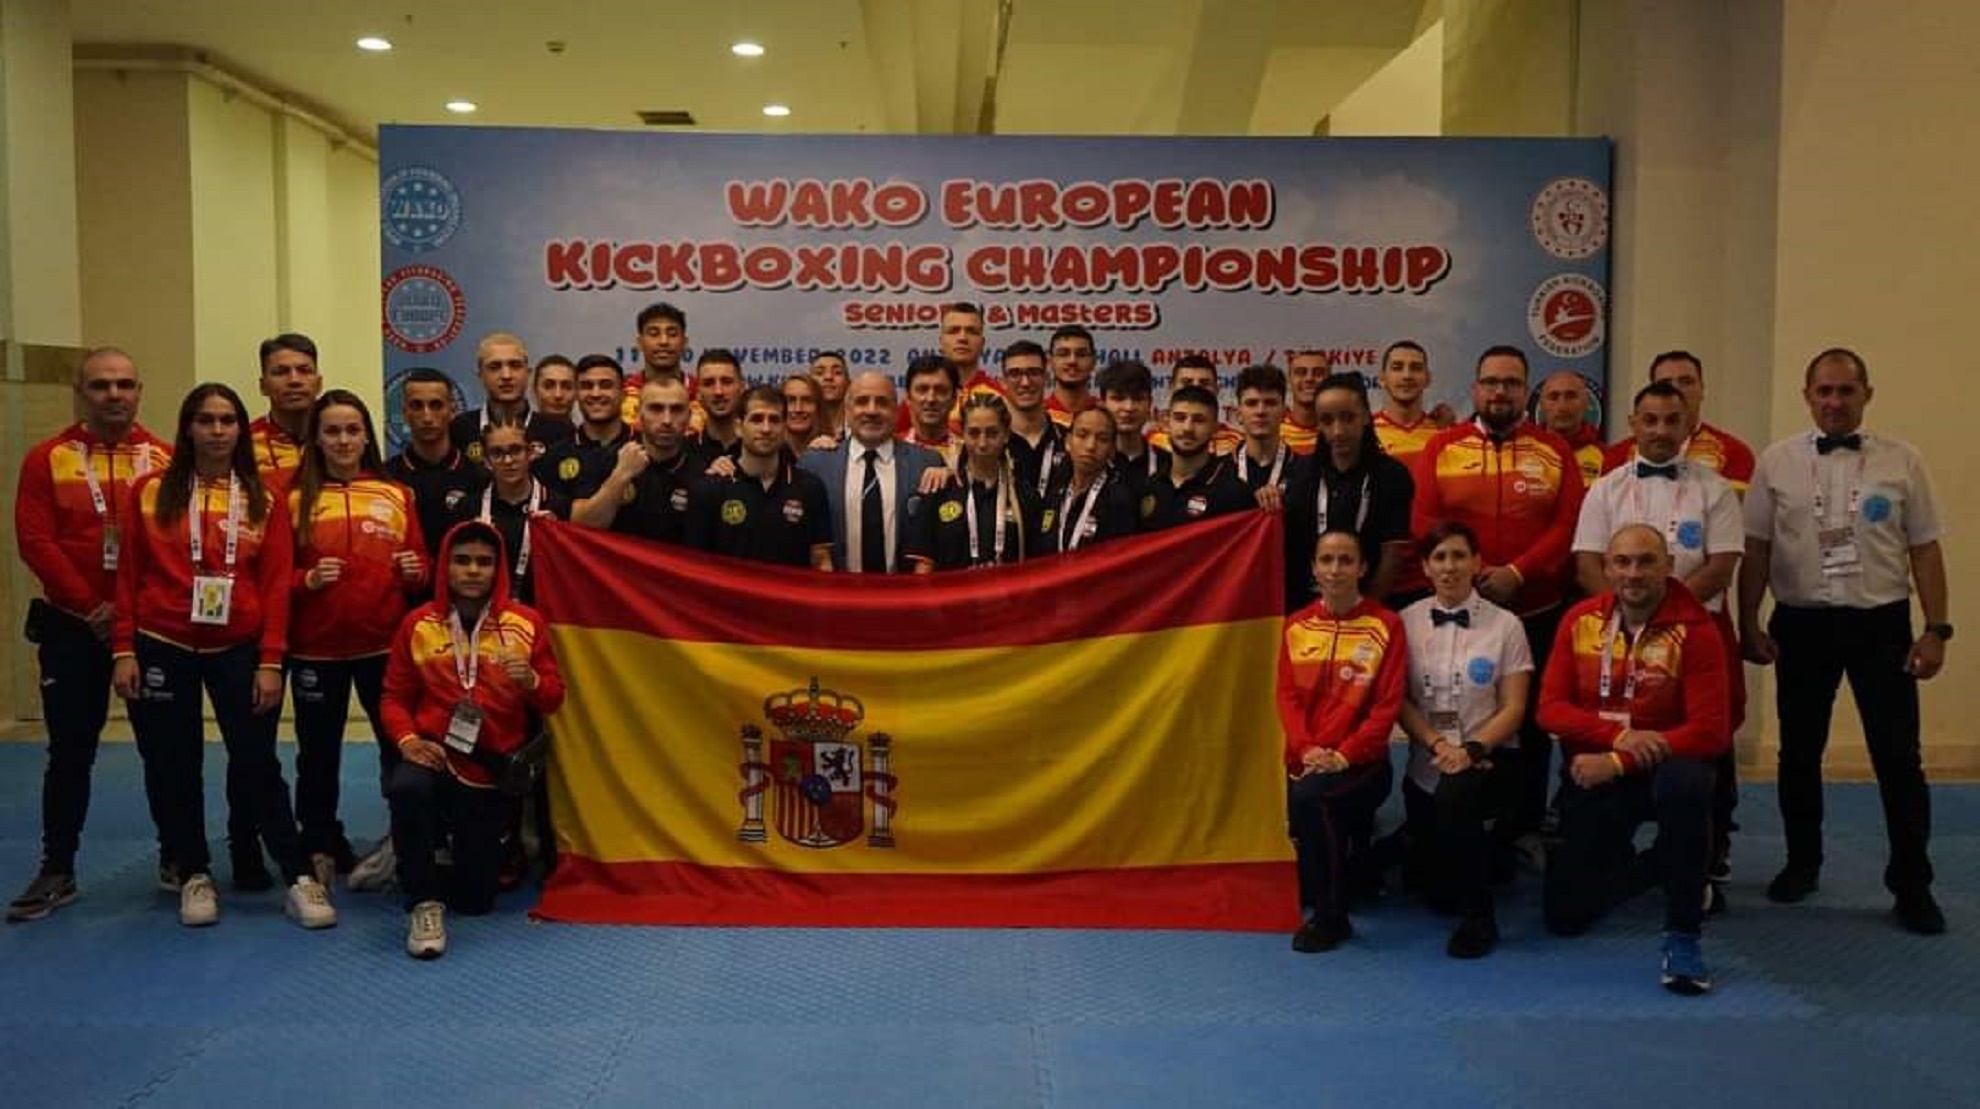 Gran comienzo de la Selección Española en los campeonatos de Europa de kickboxing